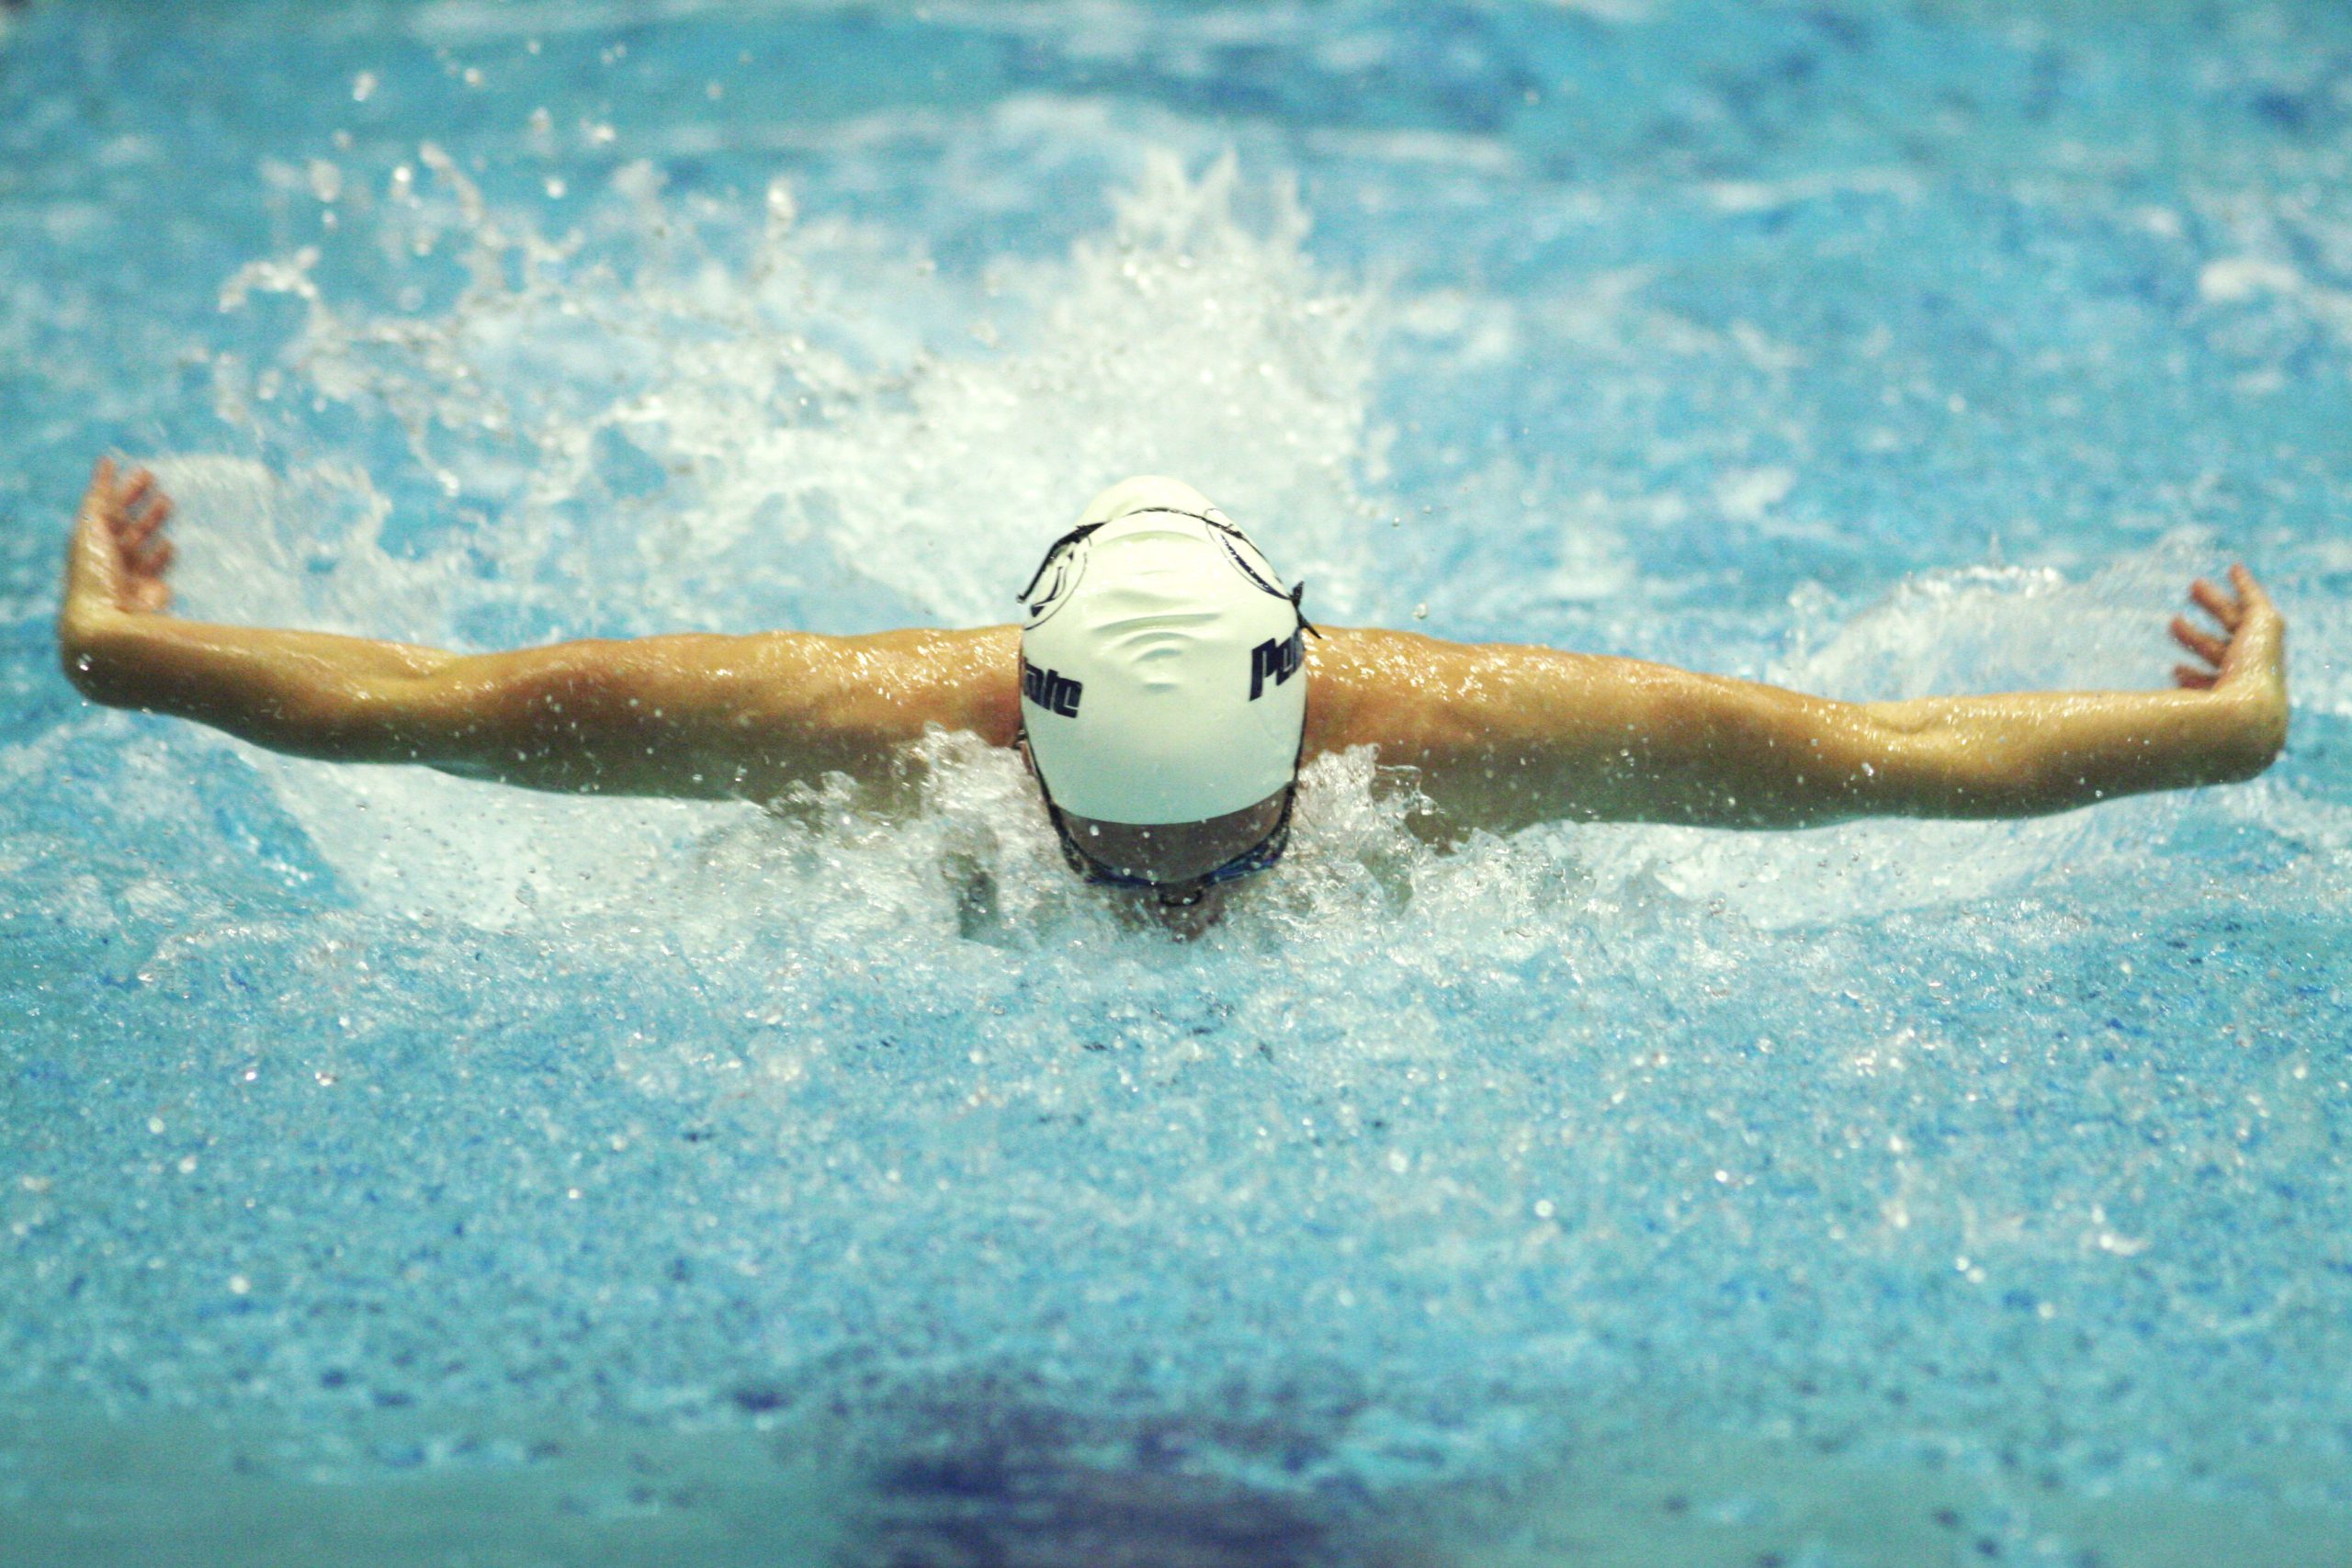 swimmer - Swimmer's Body Illusion